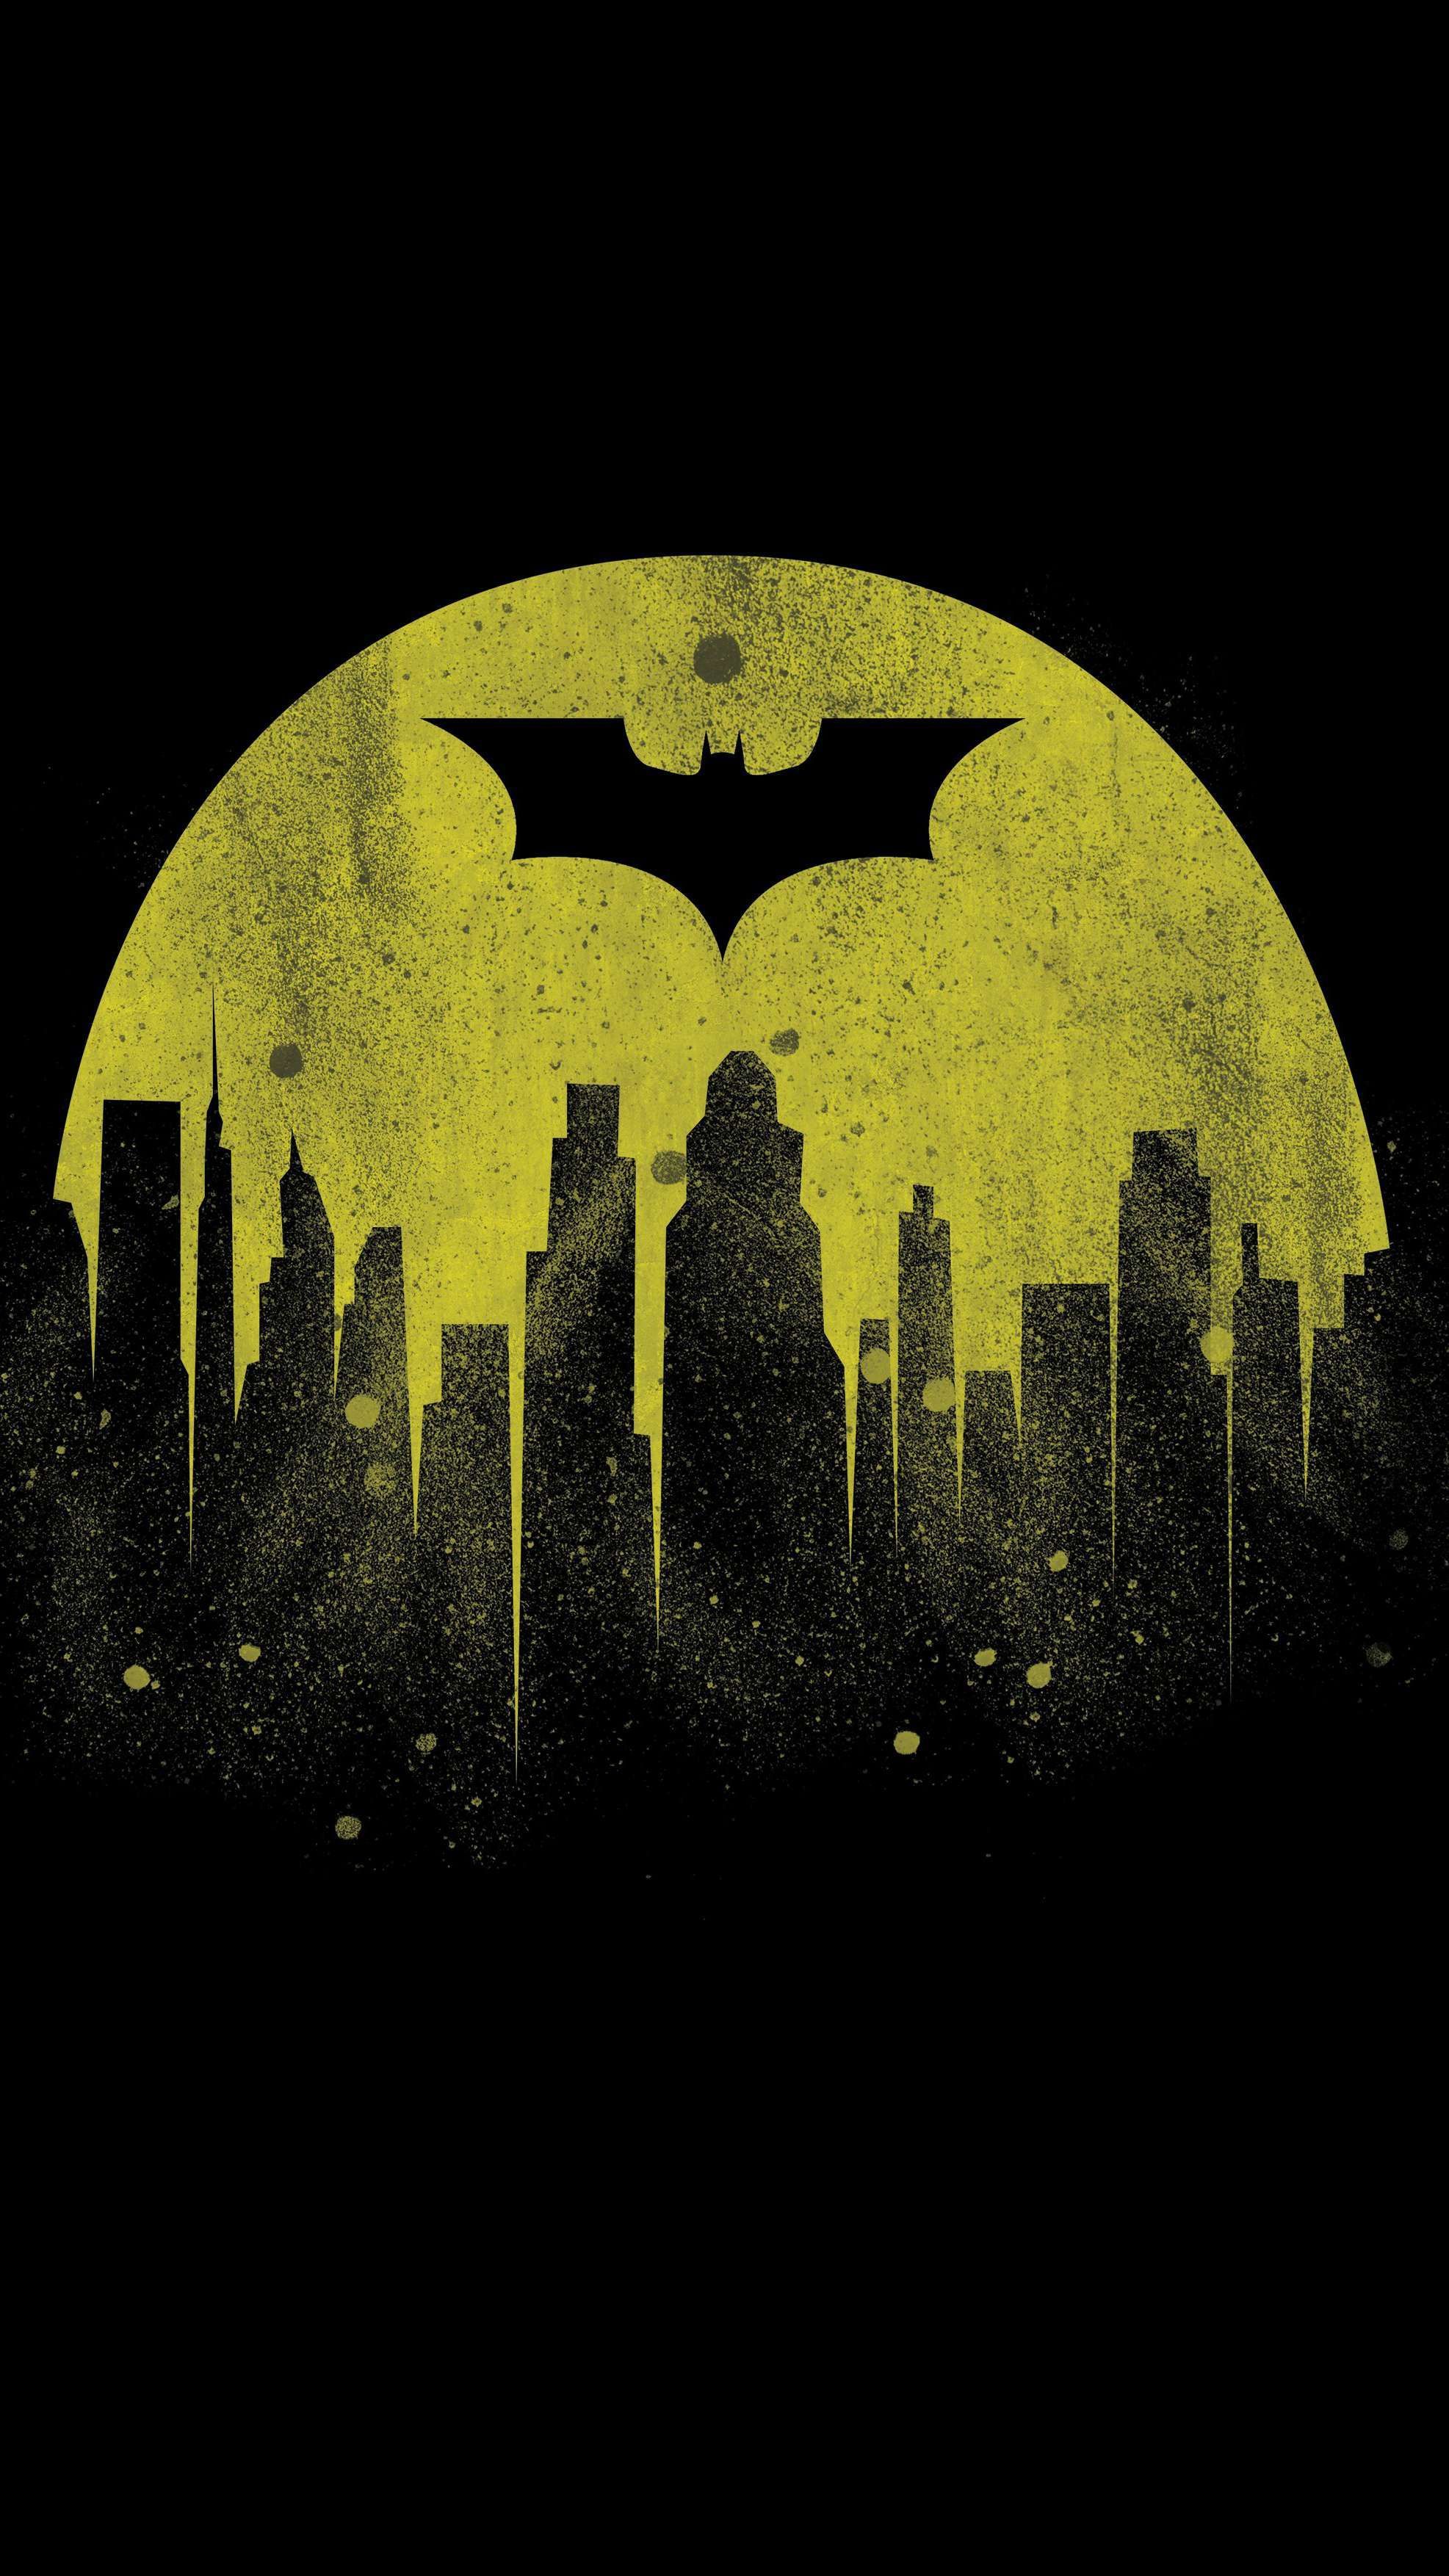 Batman City iPhone Wallpaper. Batman wallpaper, Batman wallpaper iphone, HD batman wallpaper